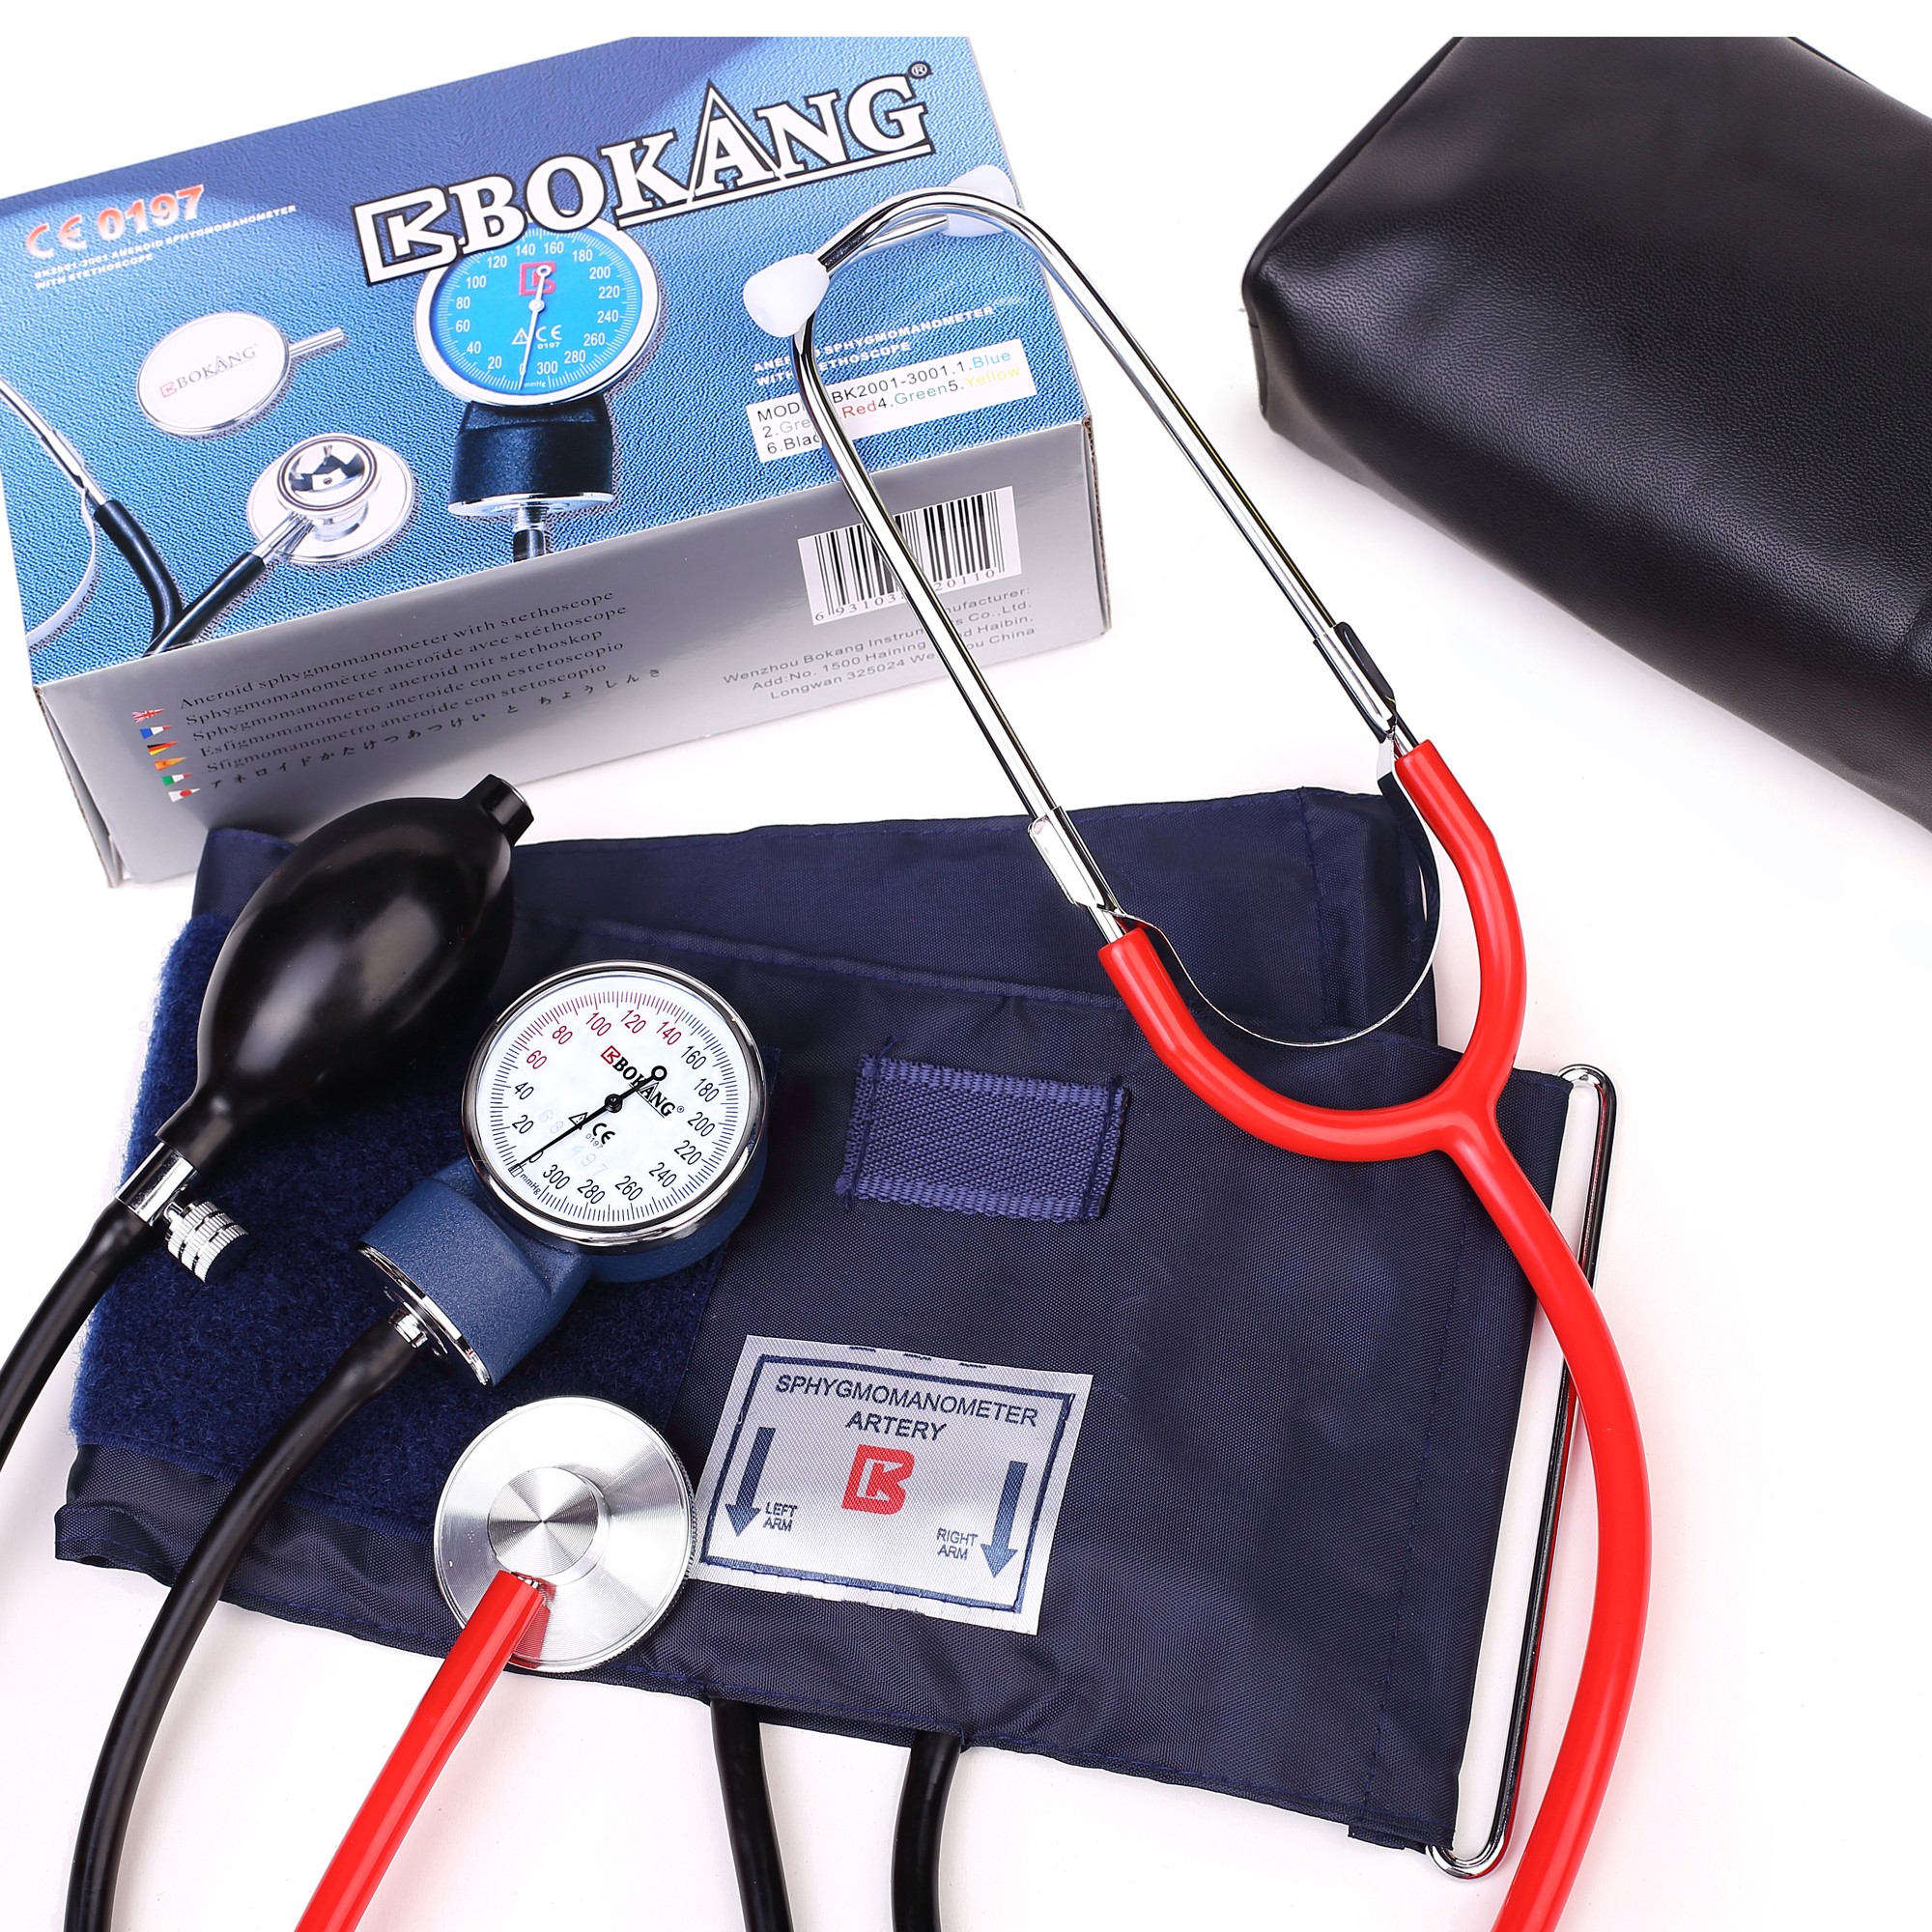 BK2001-3001 مقياس ضغط الدم مع سماعة الطبيب ذات الرأس الواحد ، مقياس ضغط الدم مع سماعة الطبيب